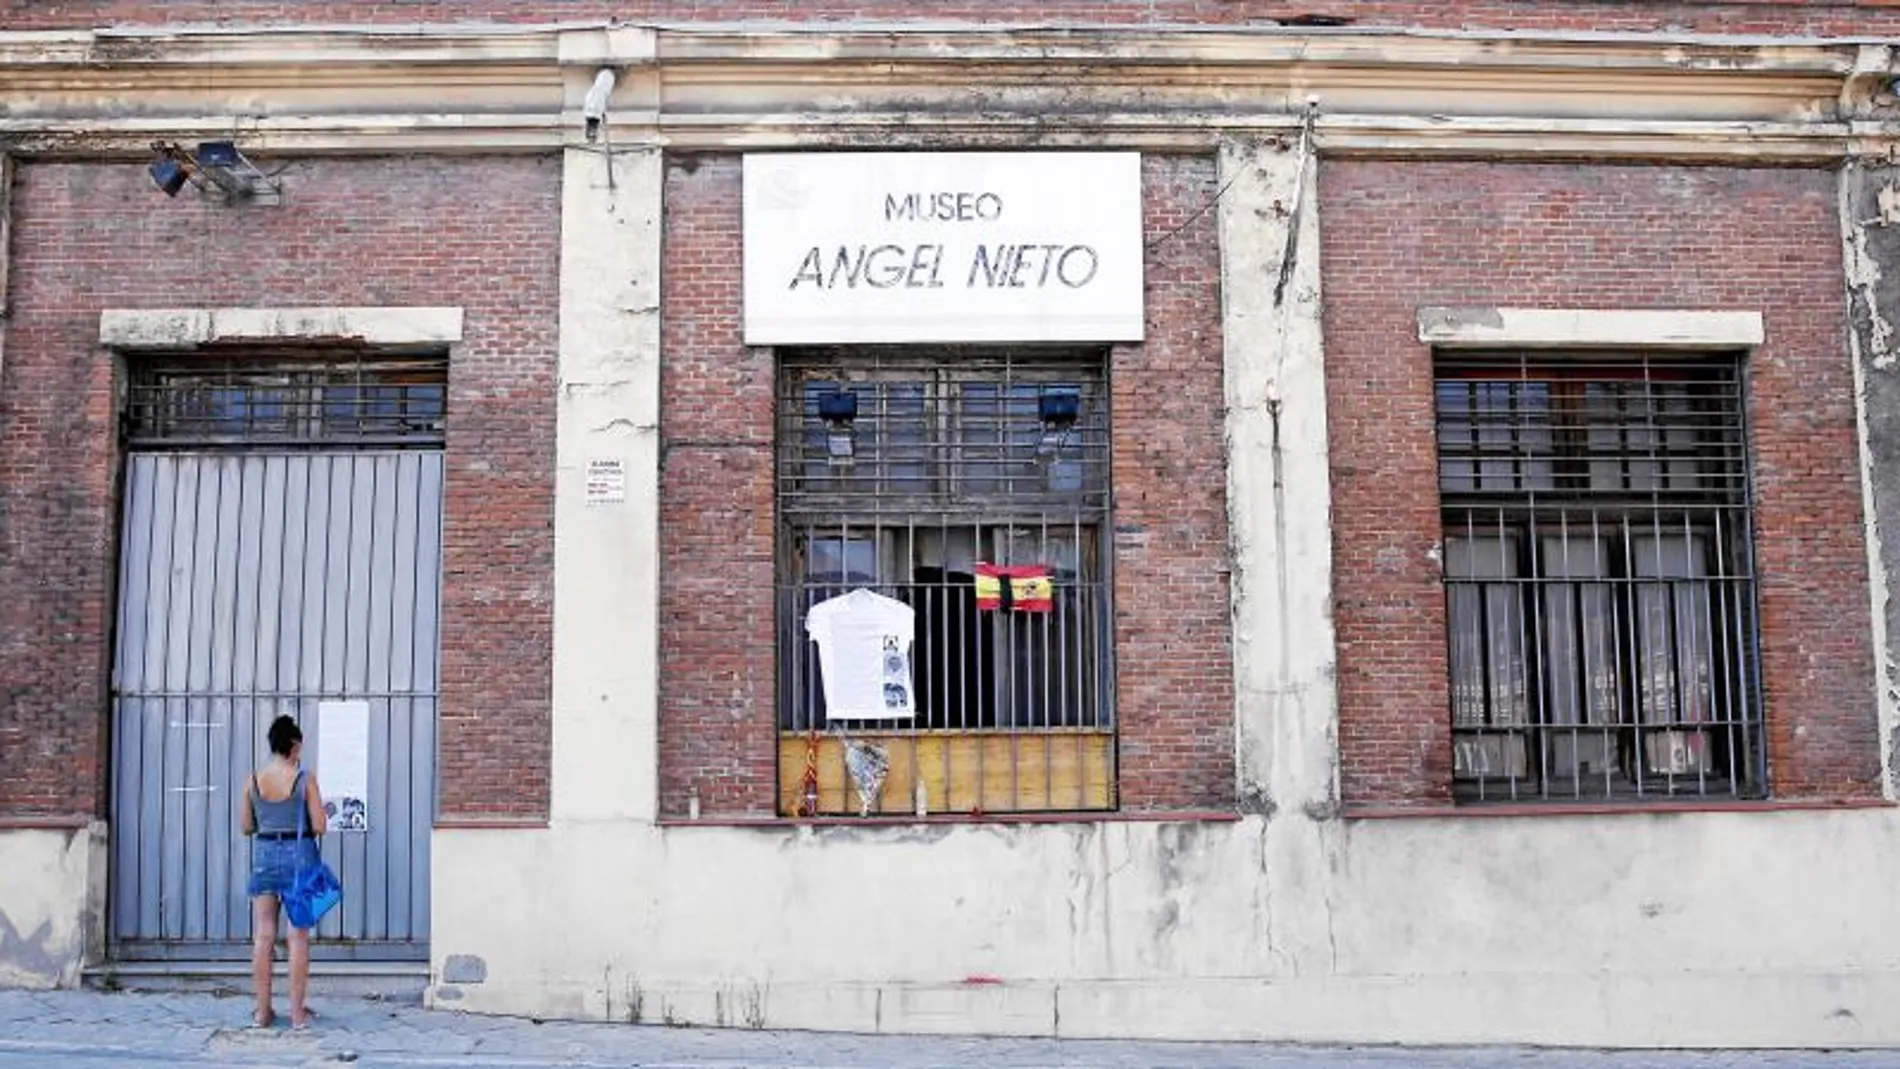 Hasta 2013, una nave propiedad del Ayuntamiento en Puente de Vallecas albergó el museo de Ángel Nieto